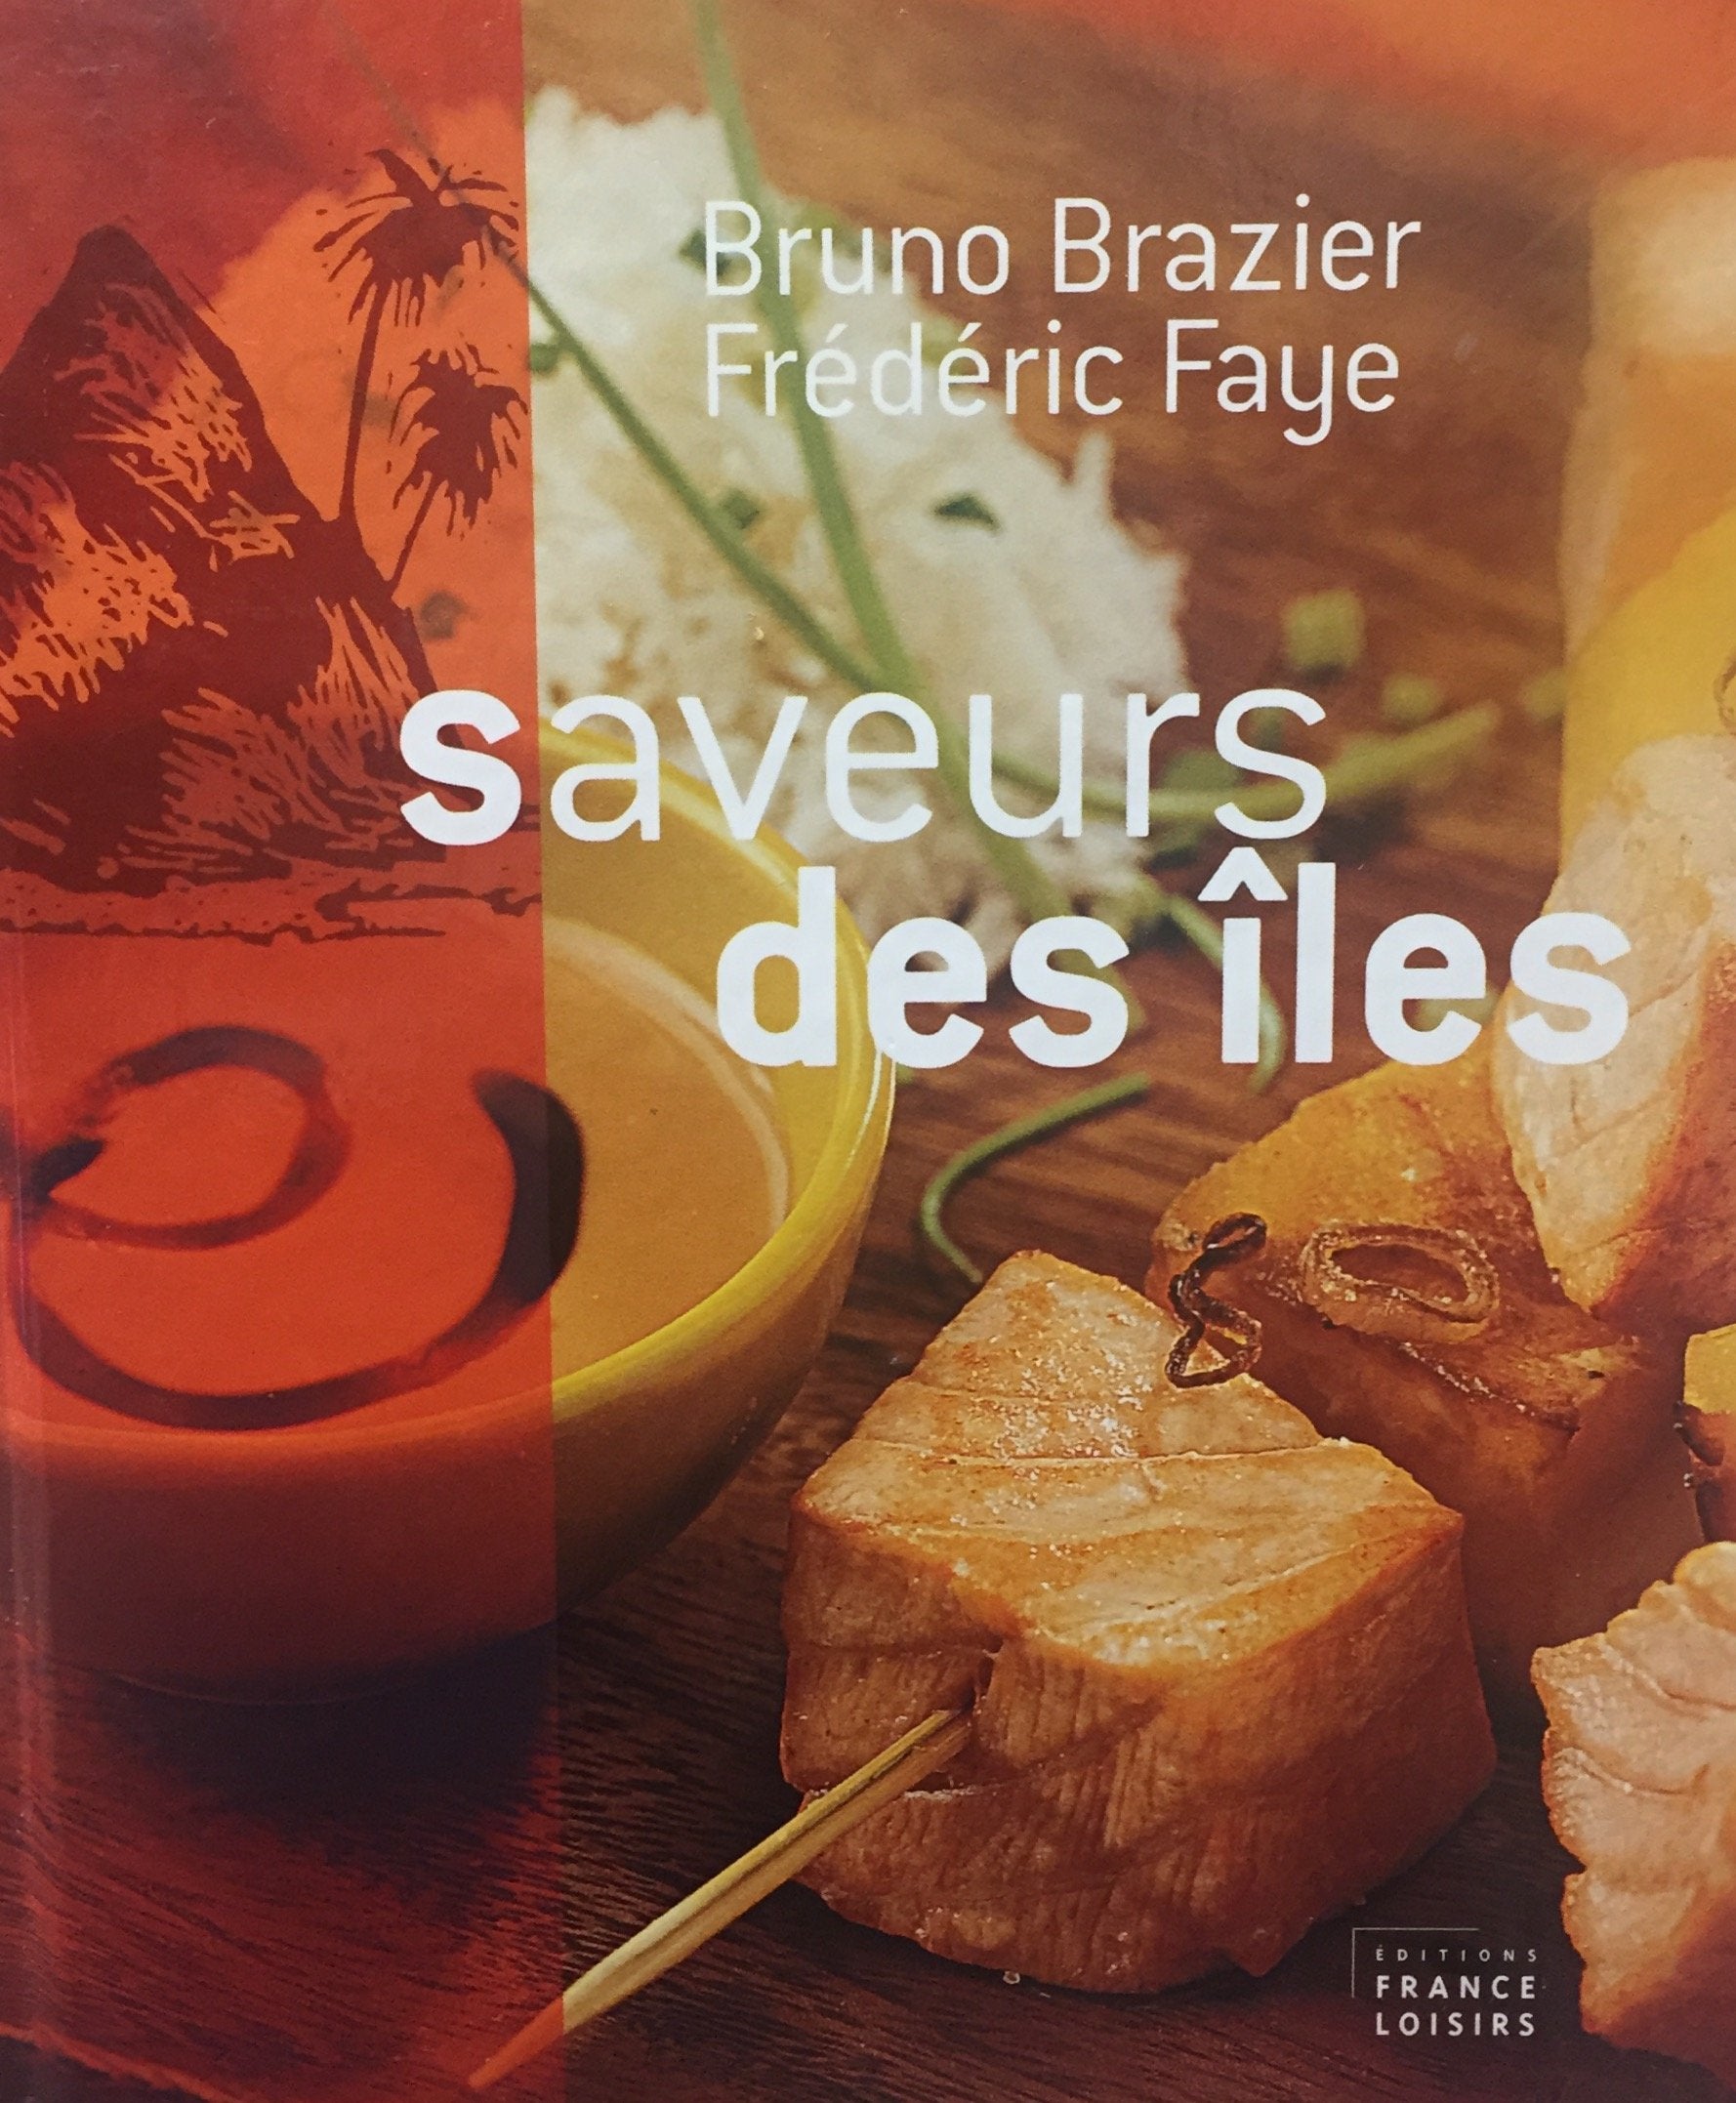 Livre ISBN 2744173614 Saveurs des îles (Bruno Brazier)